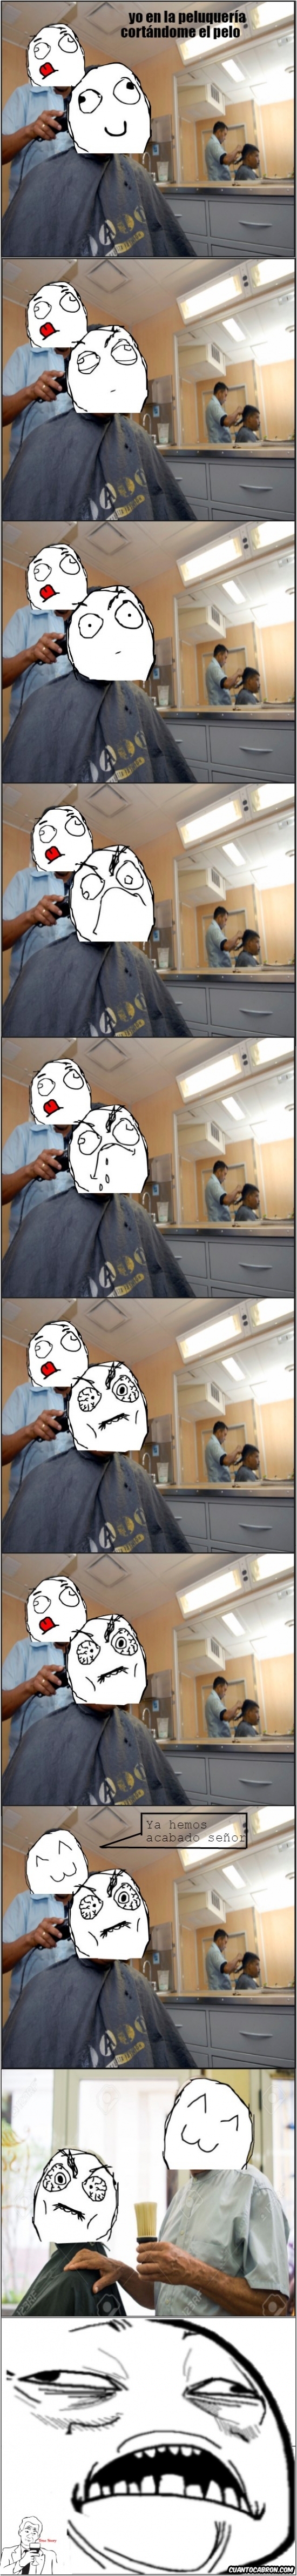 Me_gusta - Ese cepillo del peluquero